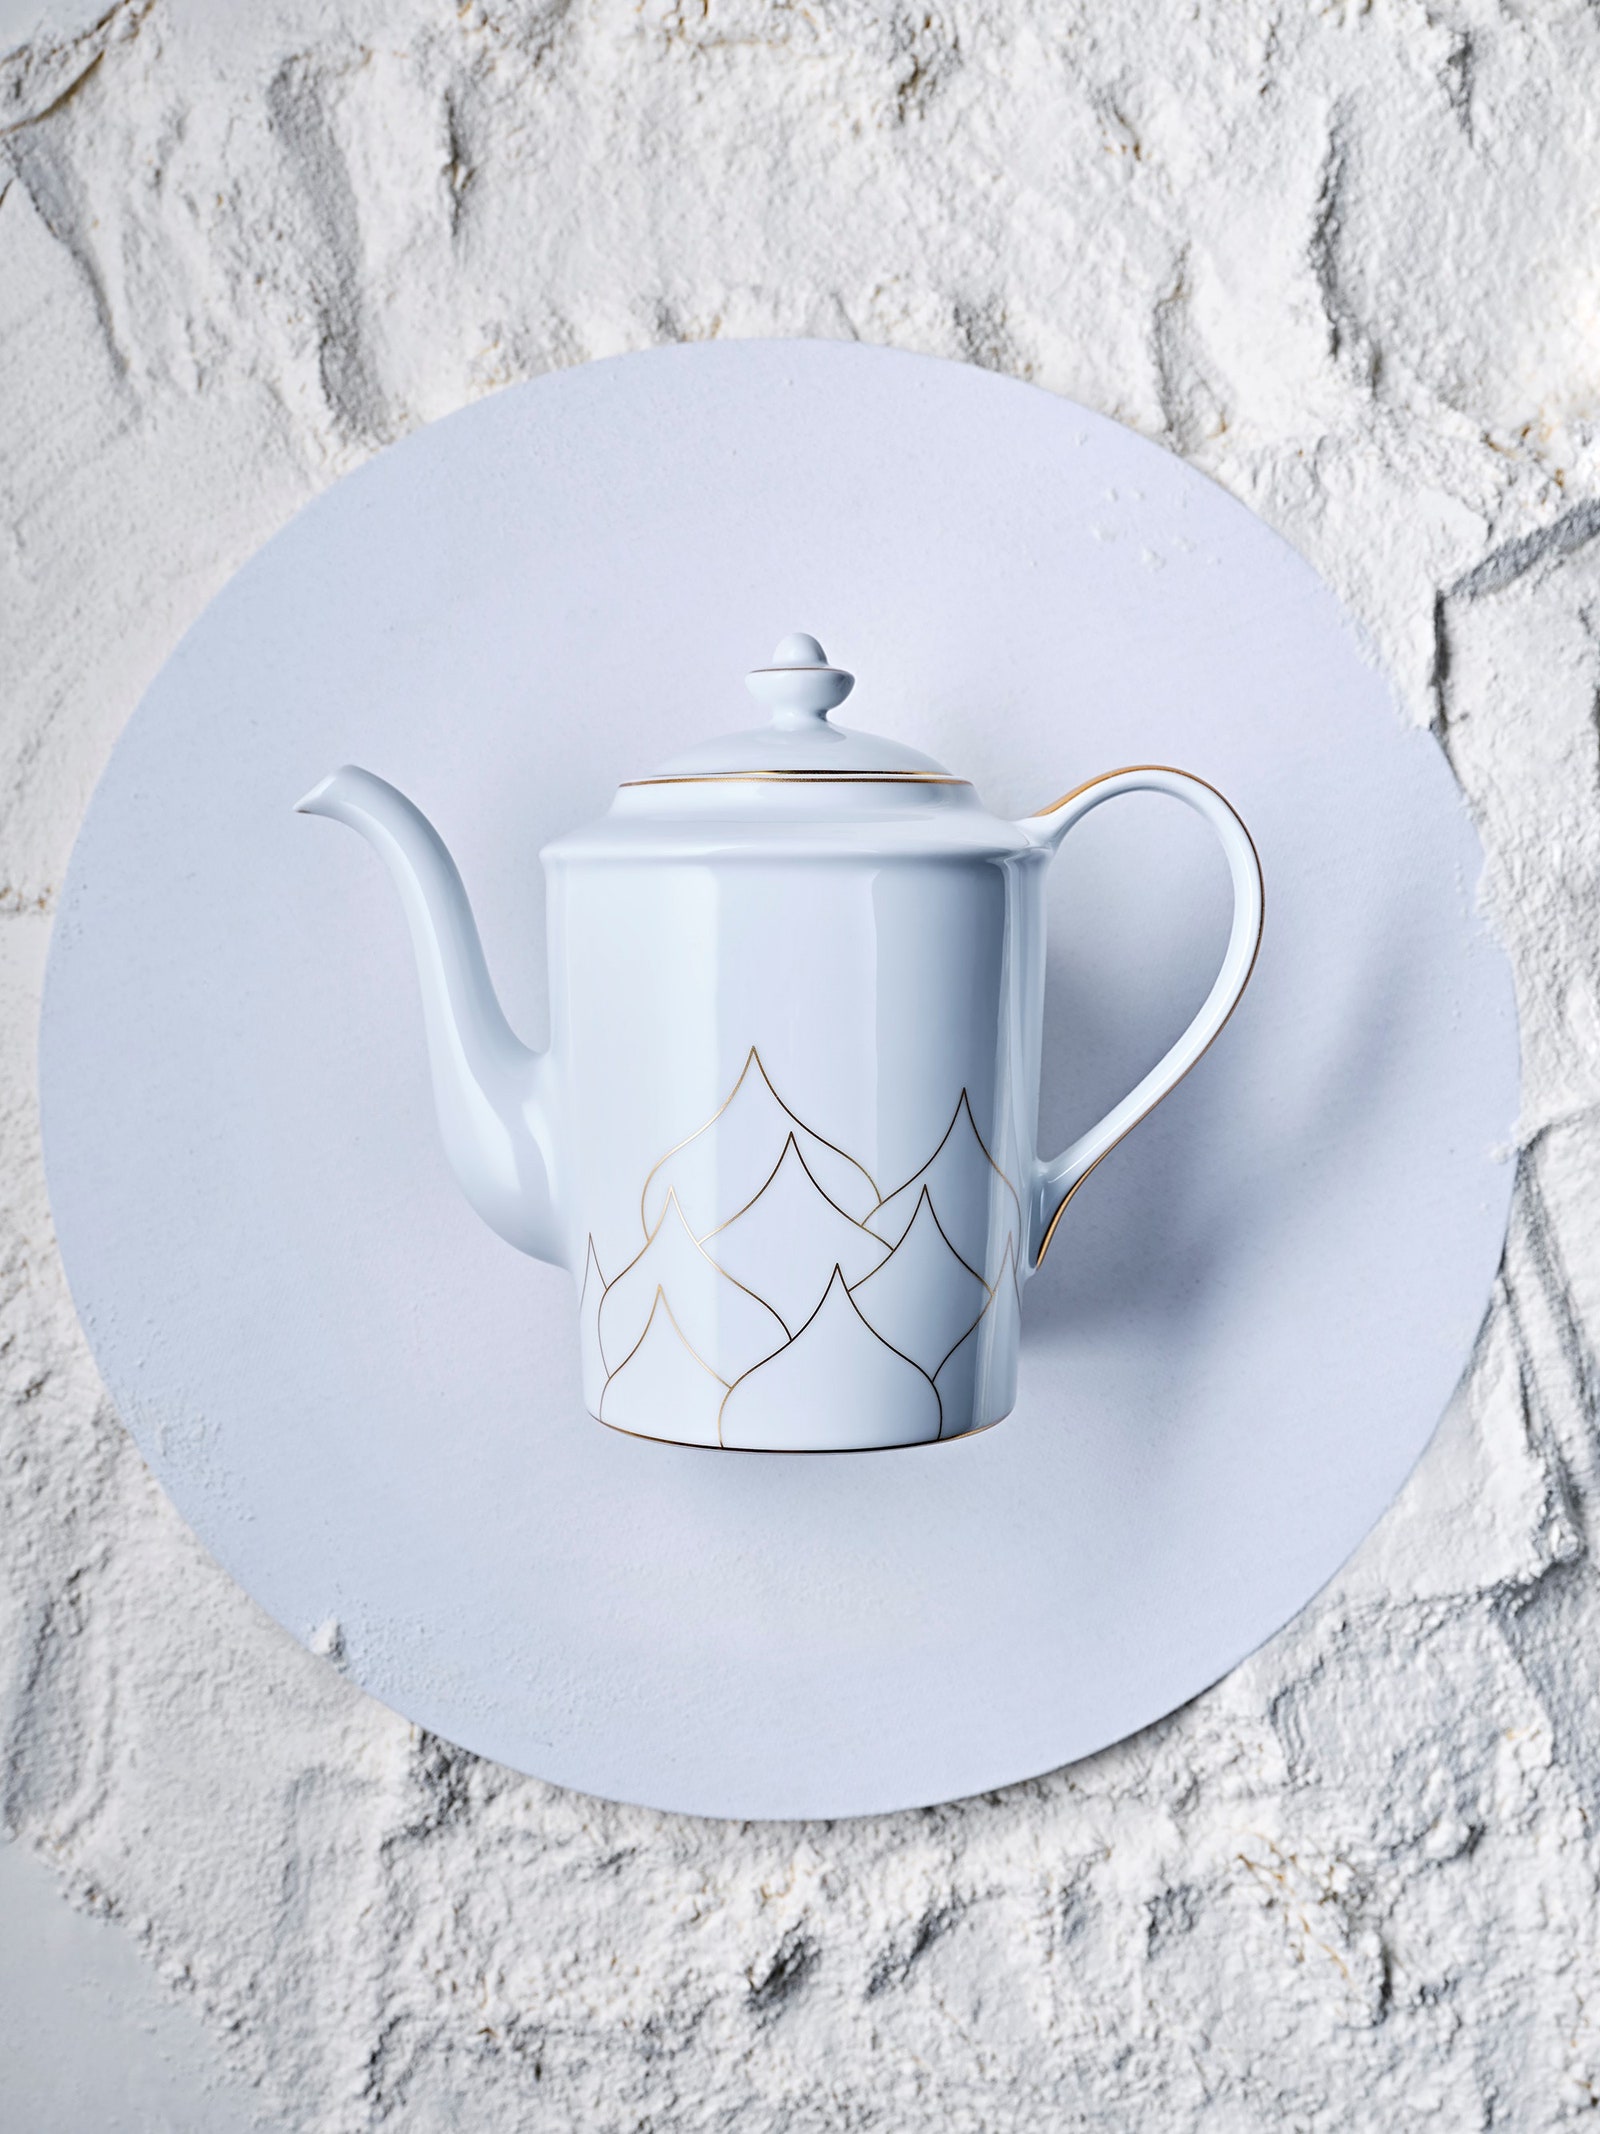 Чайный сервиз по дизайну Димы Логинова для Cartier